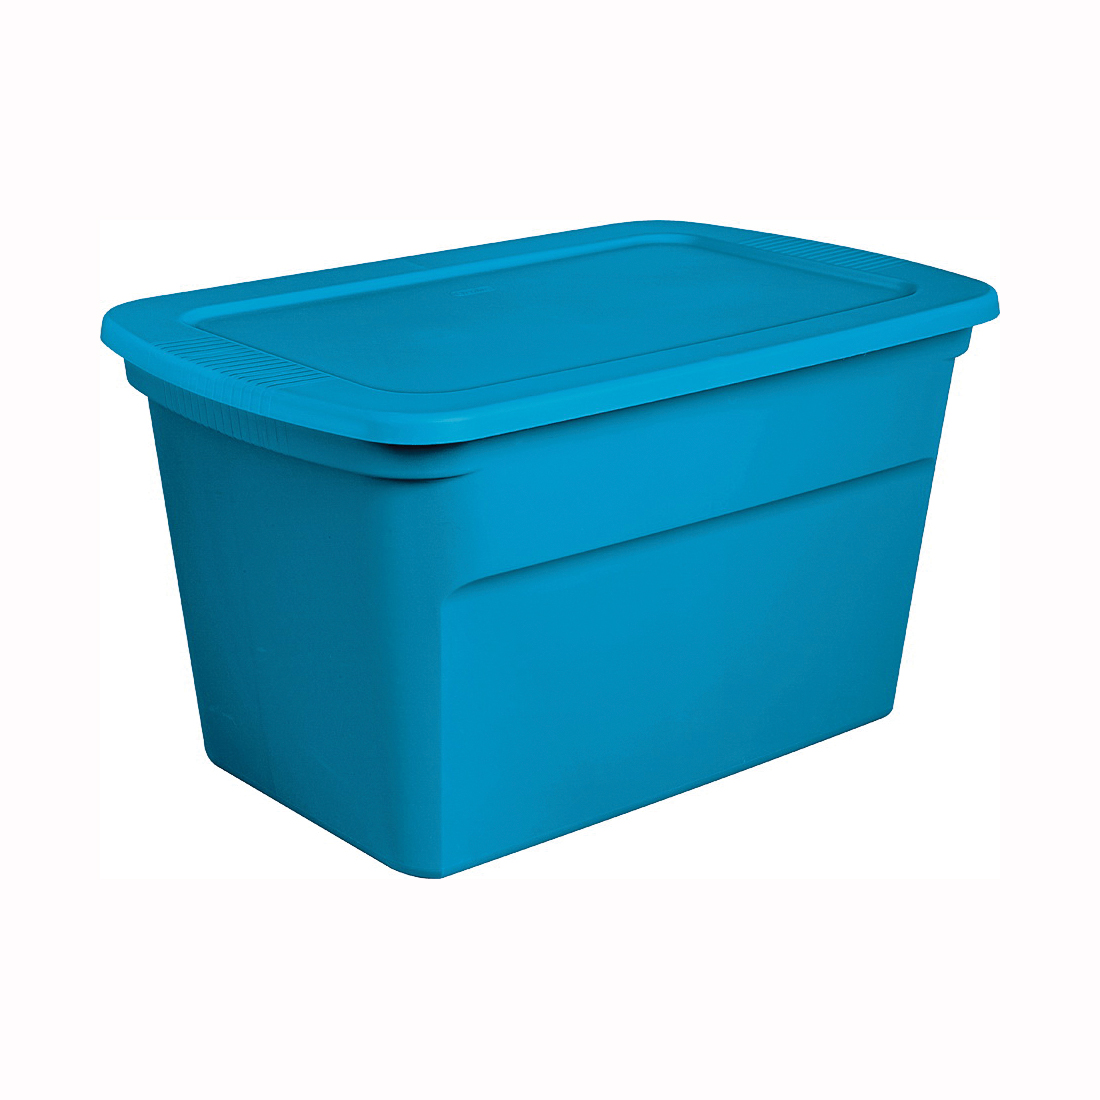 17364306 Tote Box, Plastic, Blue, 30-1/2 in L, 20-1/4 in W, 17-1/8 in H